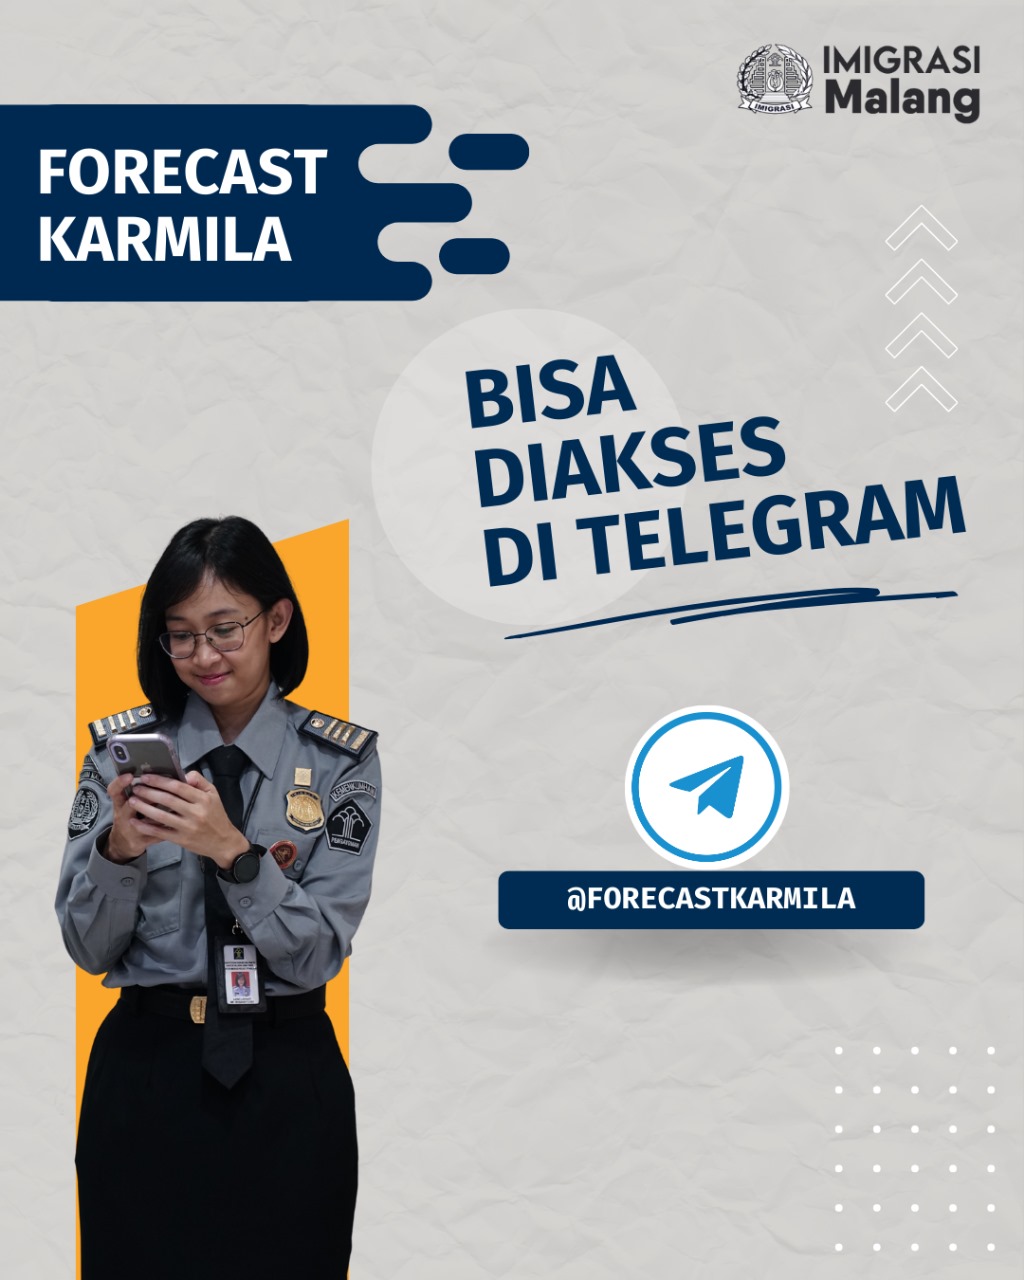 Layanan Izin Tinggal Forecast Karmila Kini Bisa Diakses di Telegram